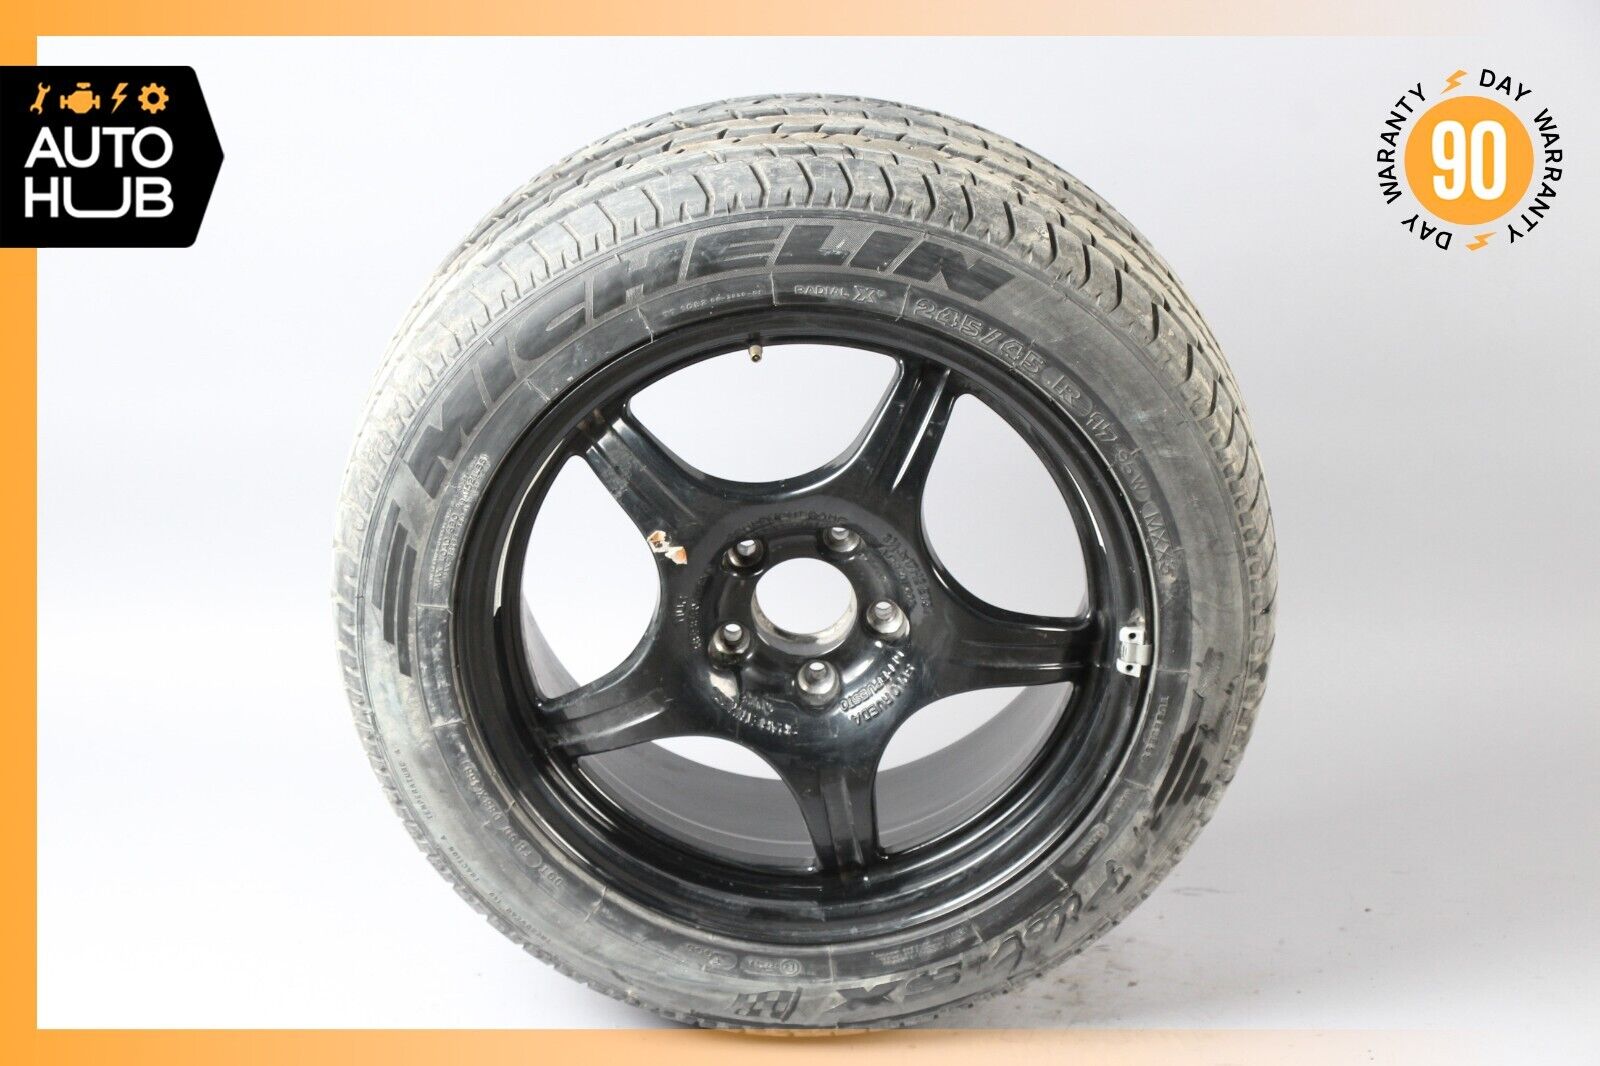 99-02 Mercedes R129 SL500 SL600 Emergency Spare Tire Wheel Donut Rim 17